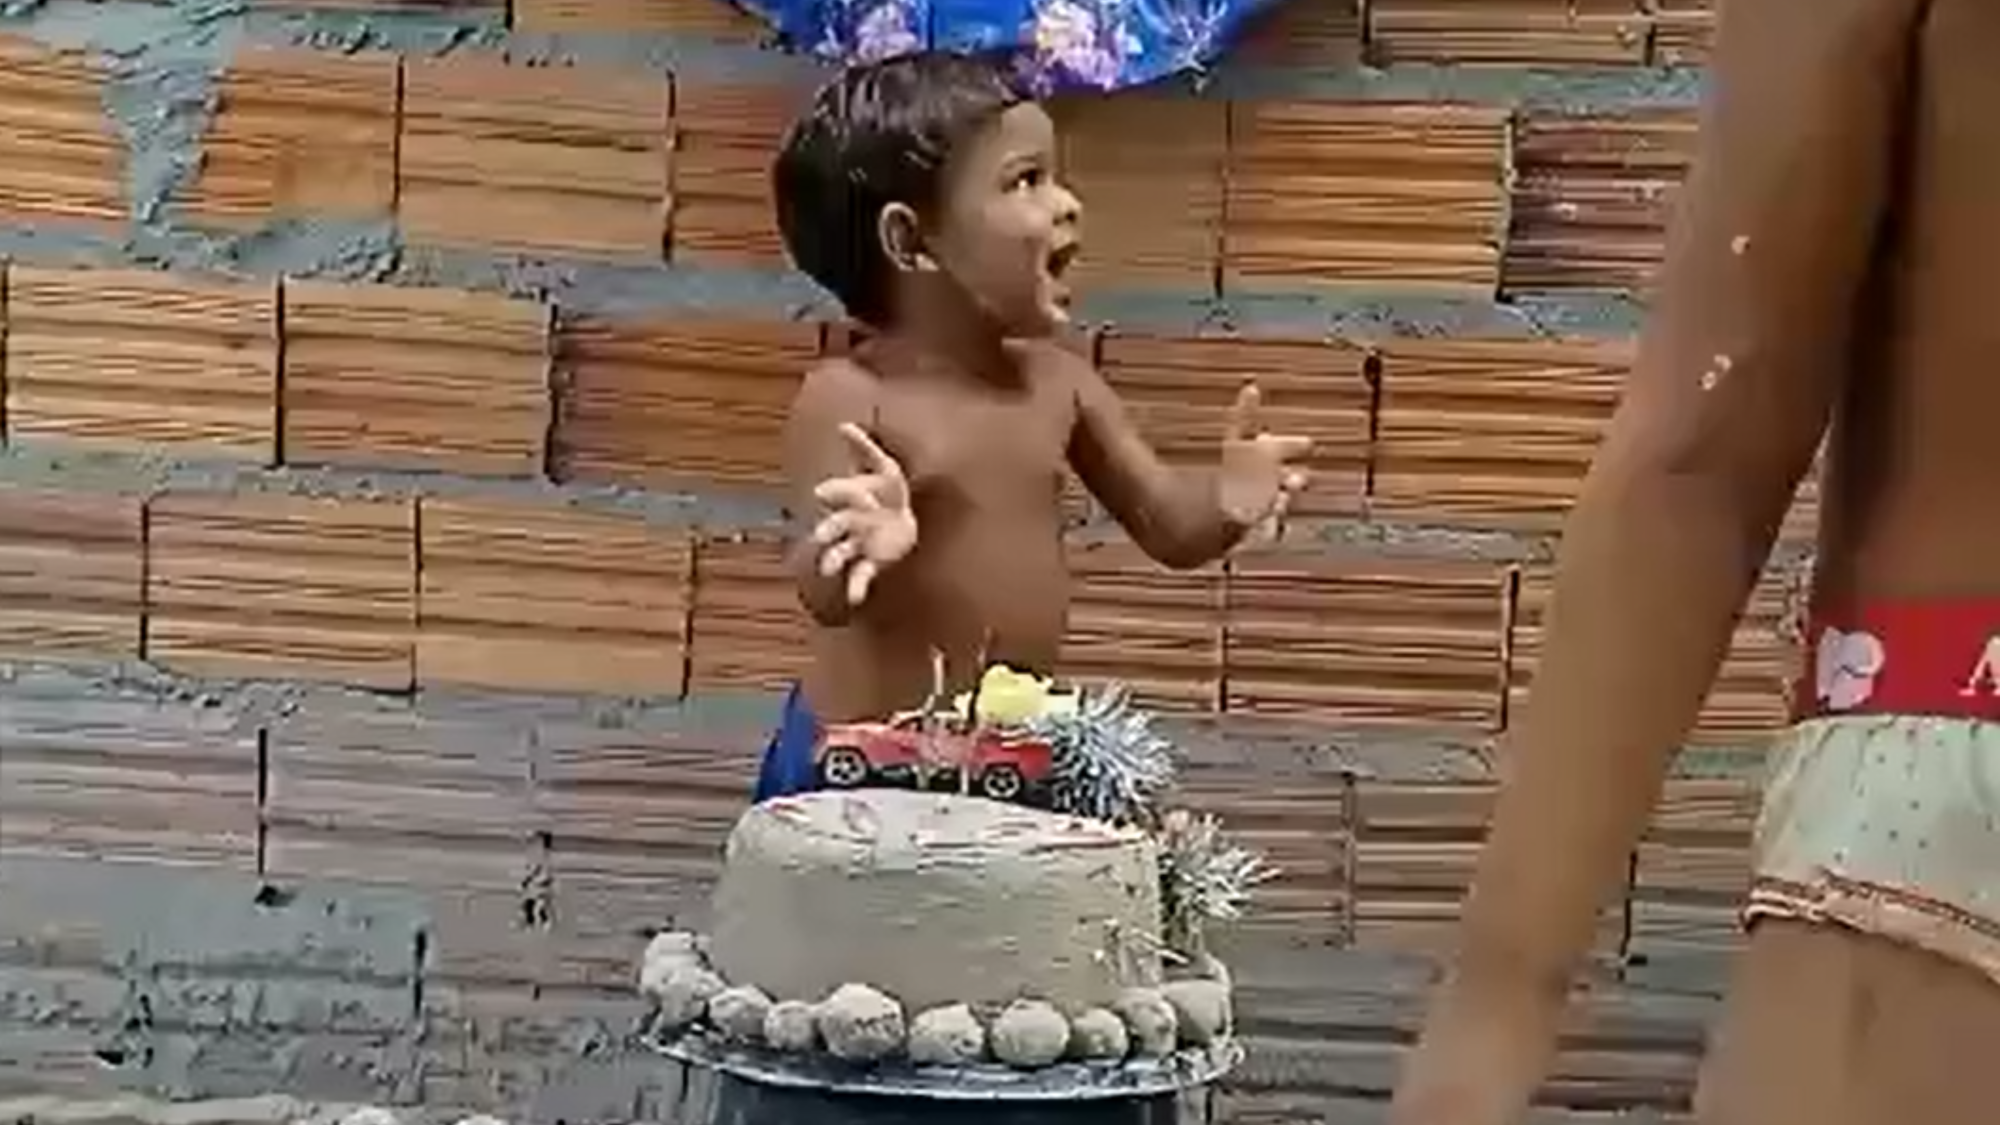 Criança de 2 anos emociona ao comemorar aniversário com bolo e docinhos feito de areia